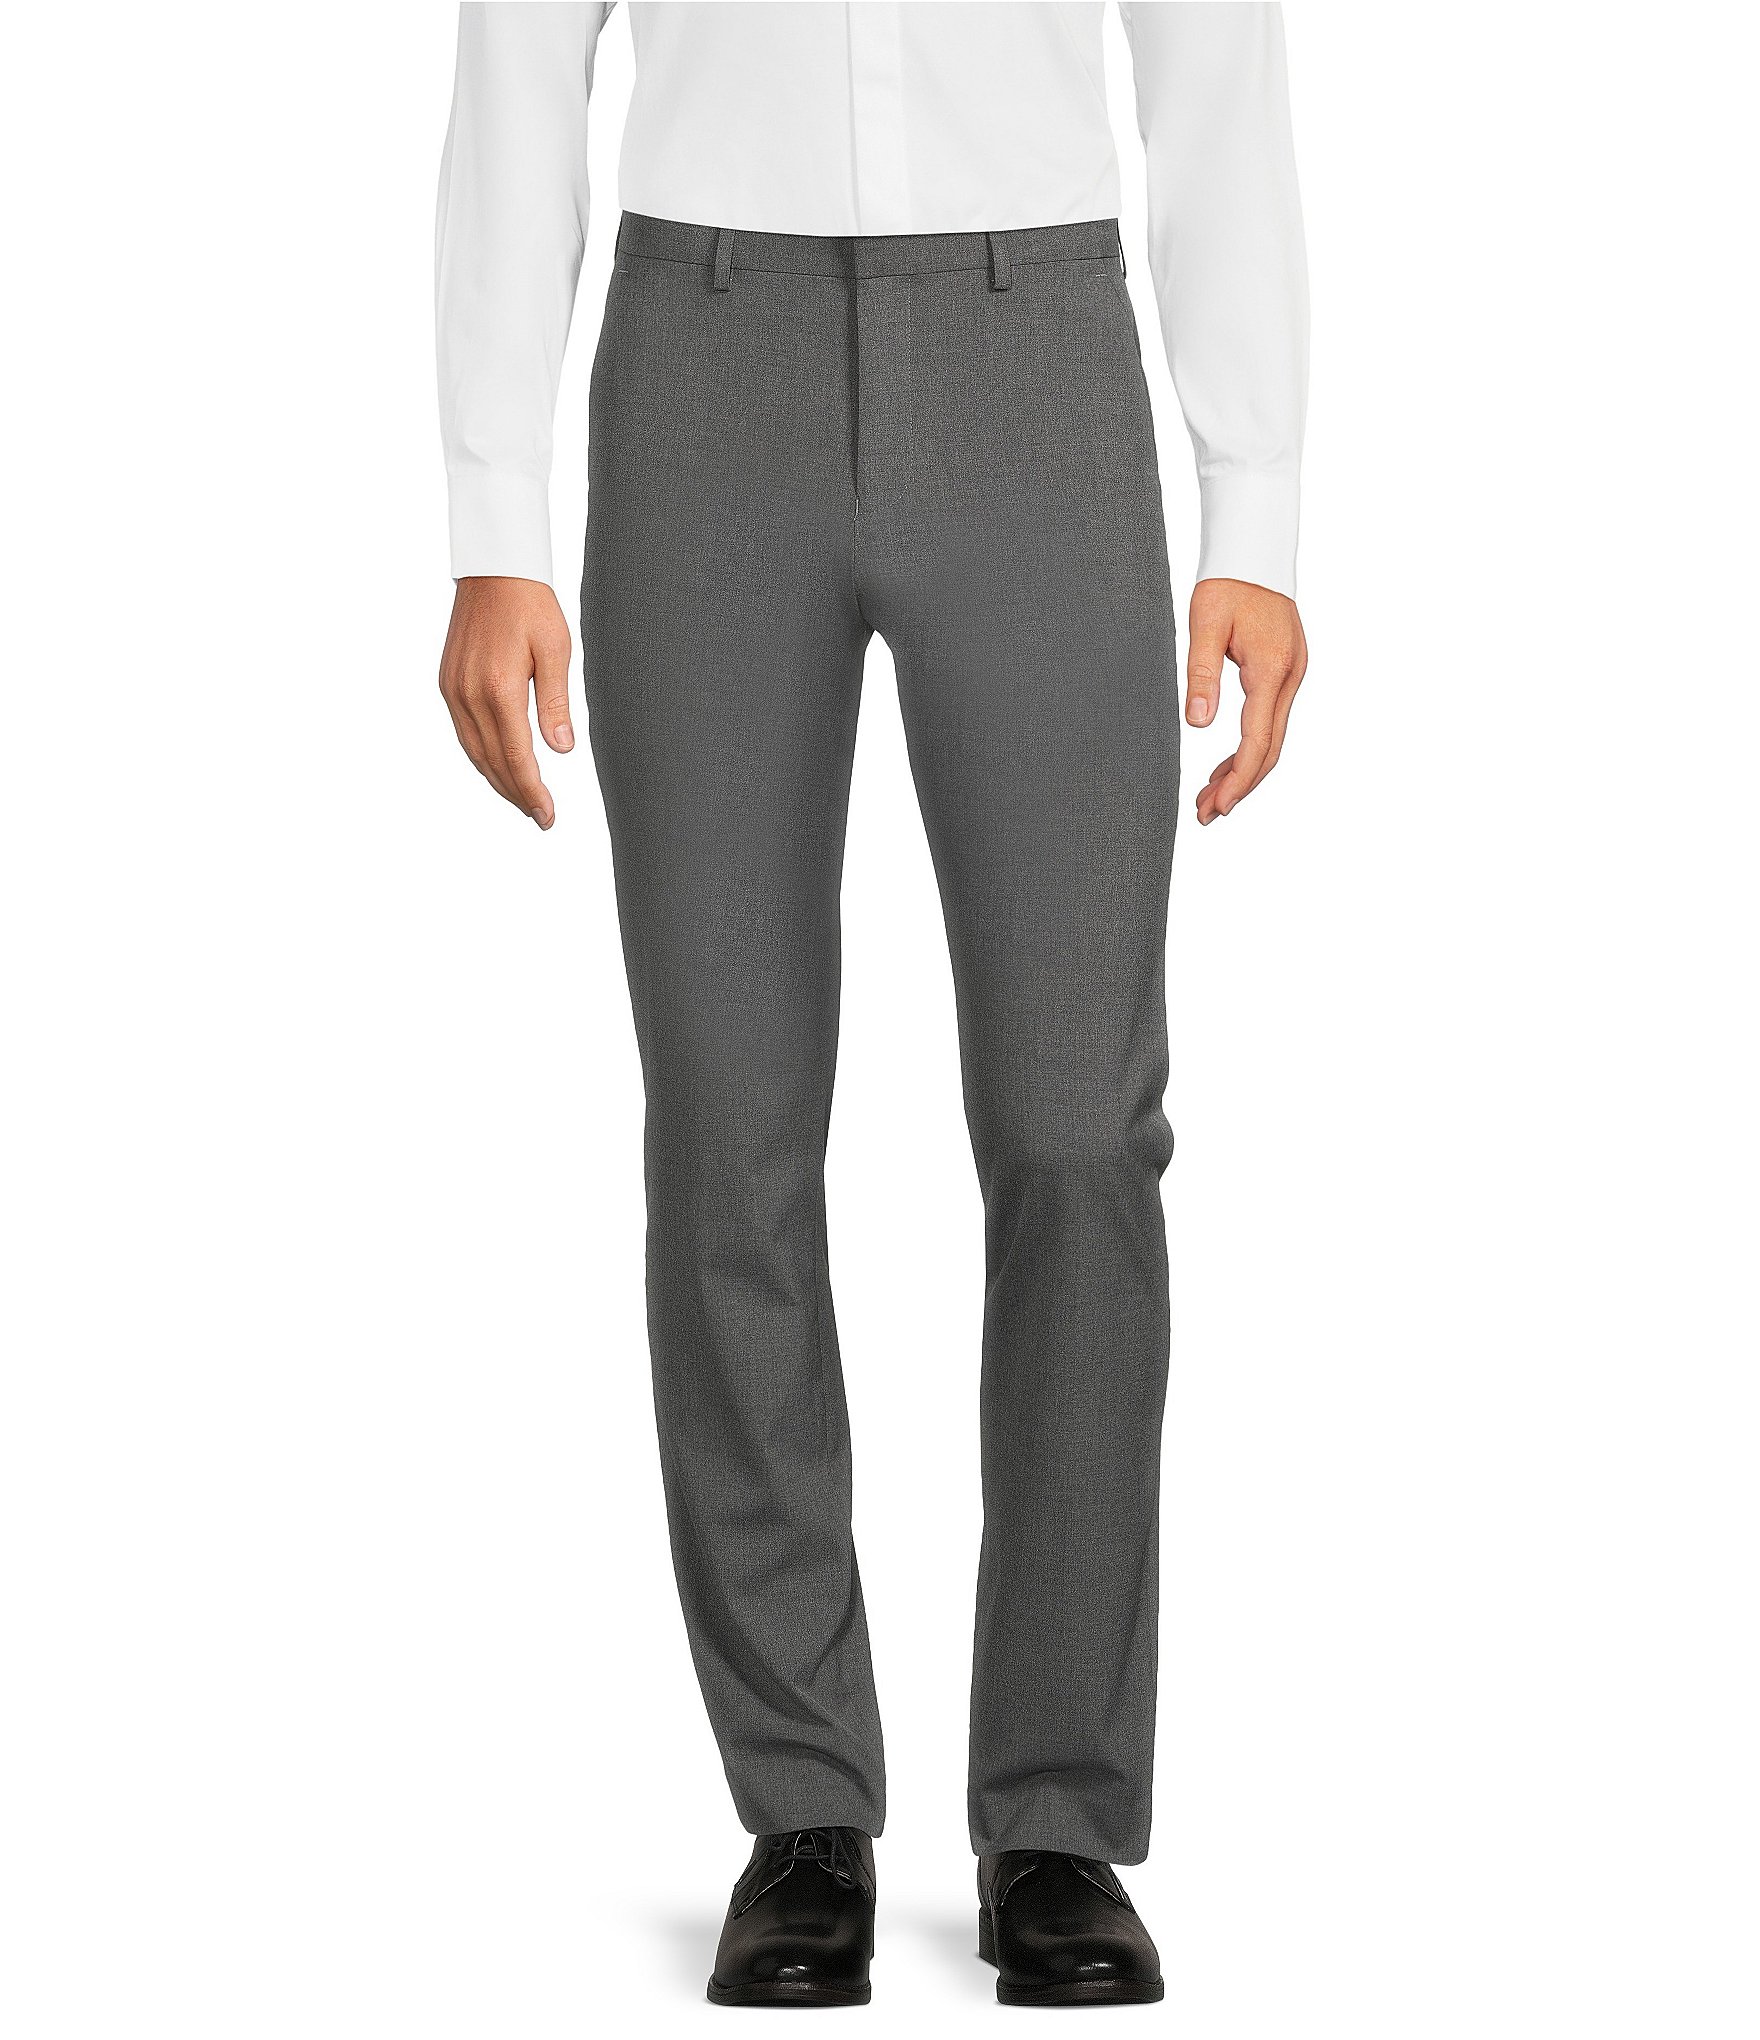 mens suit separates clothing: Men's Casual & Dress Pants